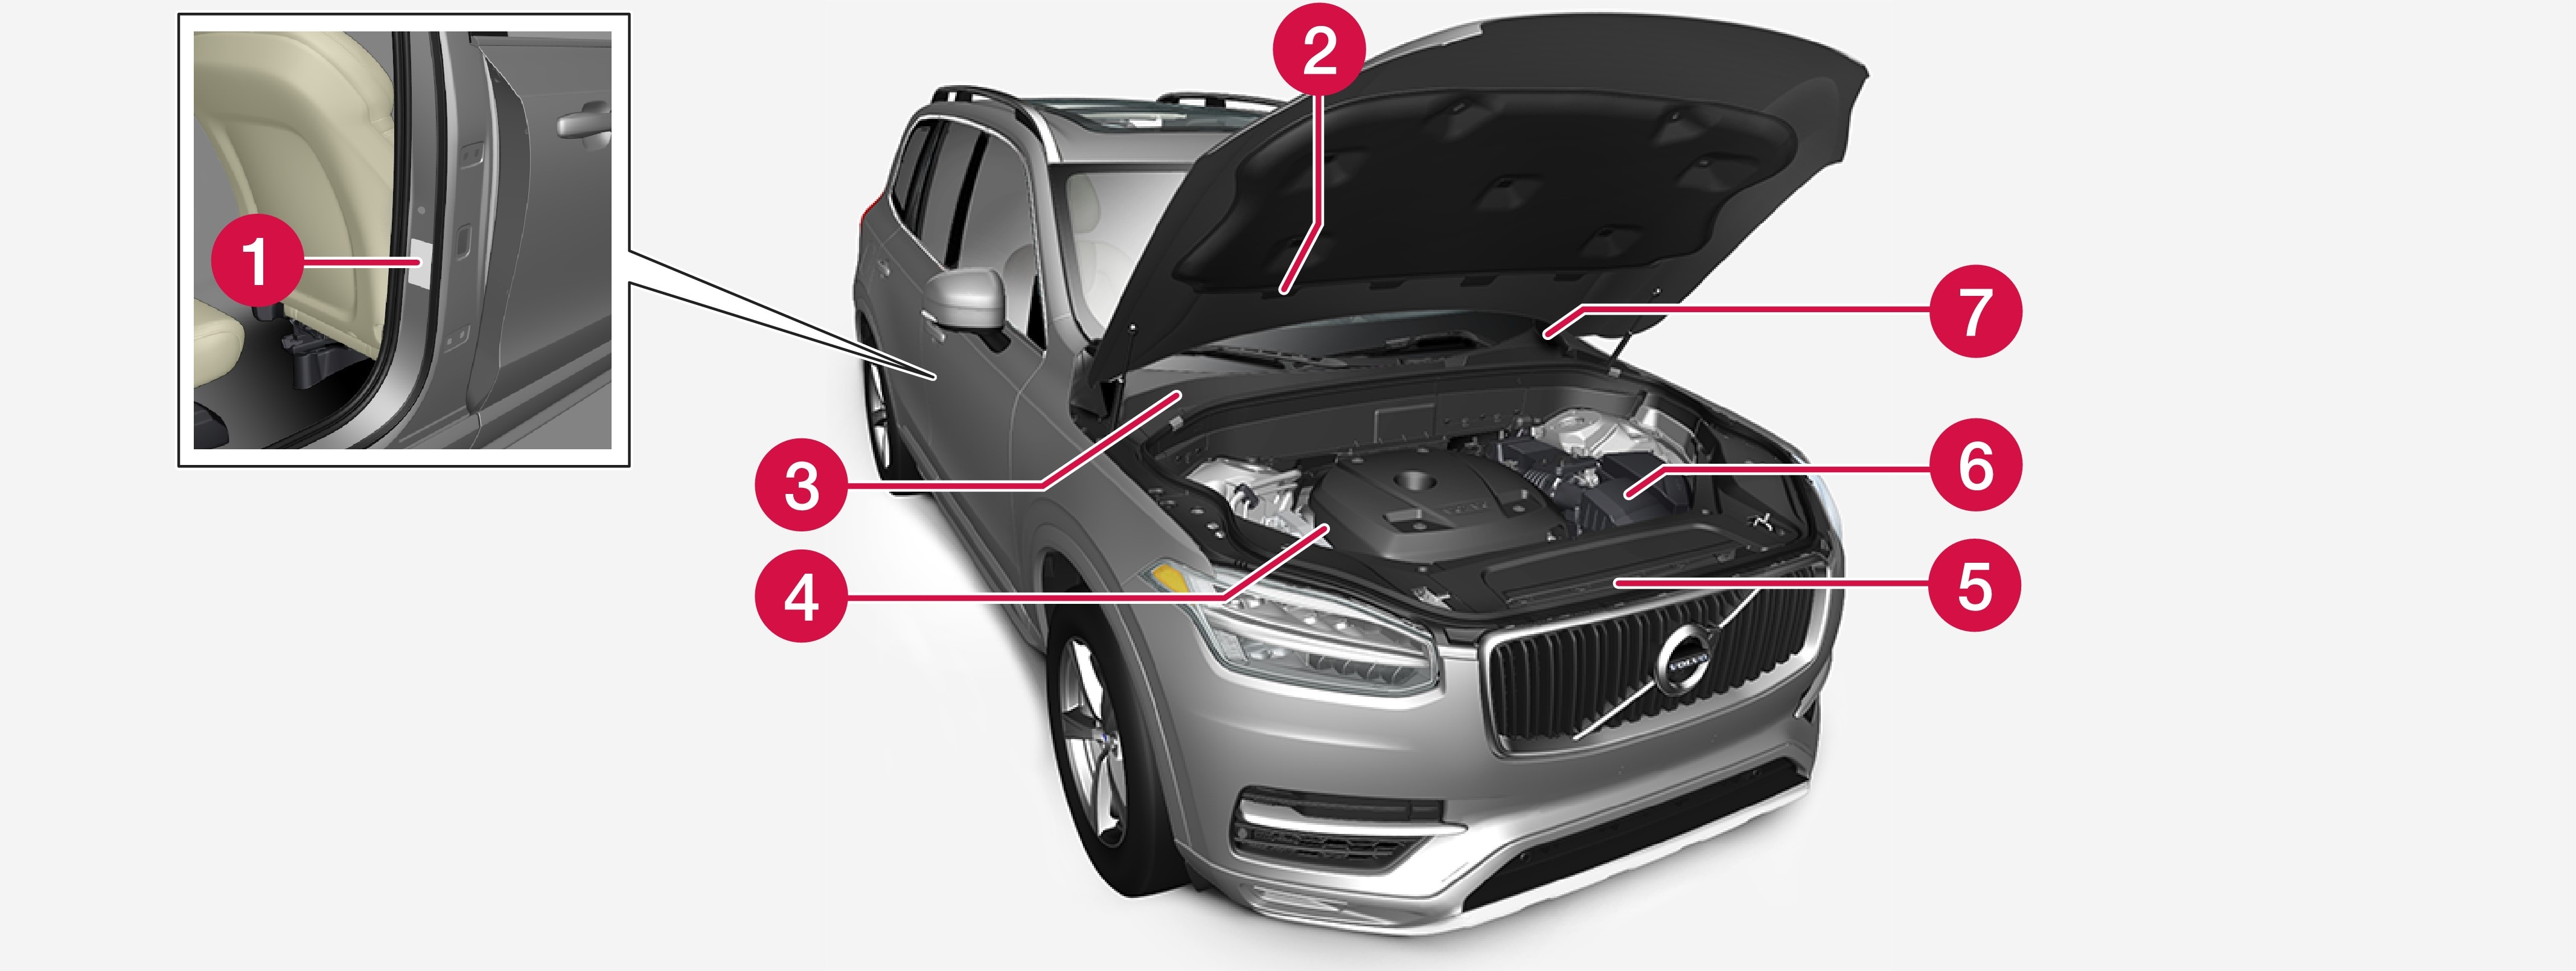 Знання типу авто, ідентифікаційного номера авто, а також номера двигуна може допомогти при зверненні до дилера Volvo з приводу роботи авто, а також при замовленні запасних частин та аксесуарів.